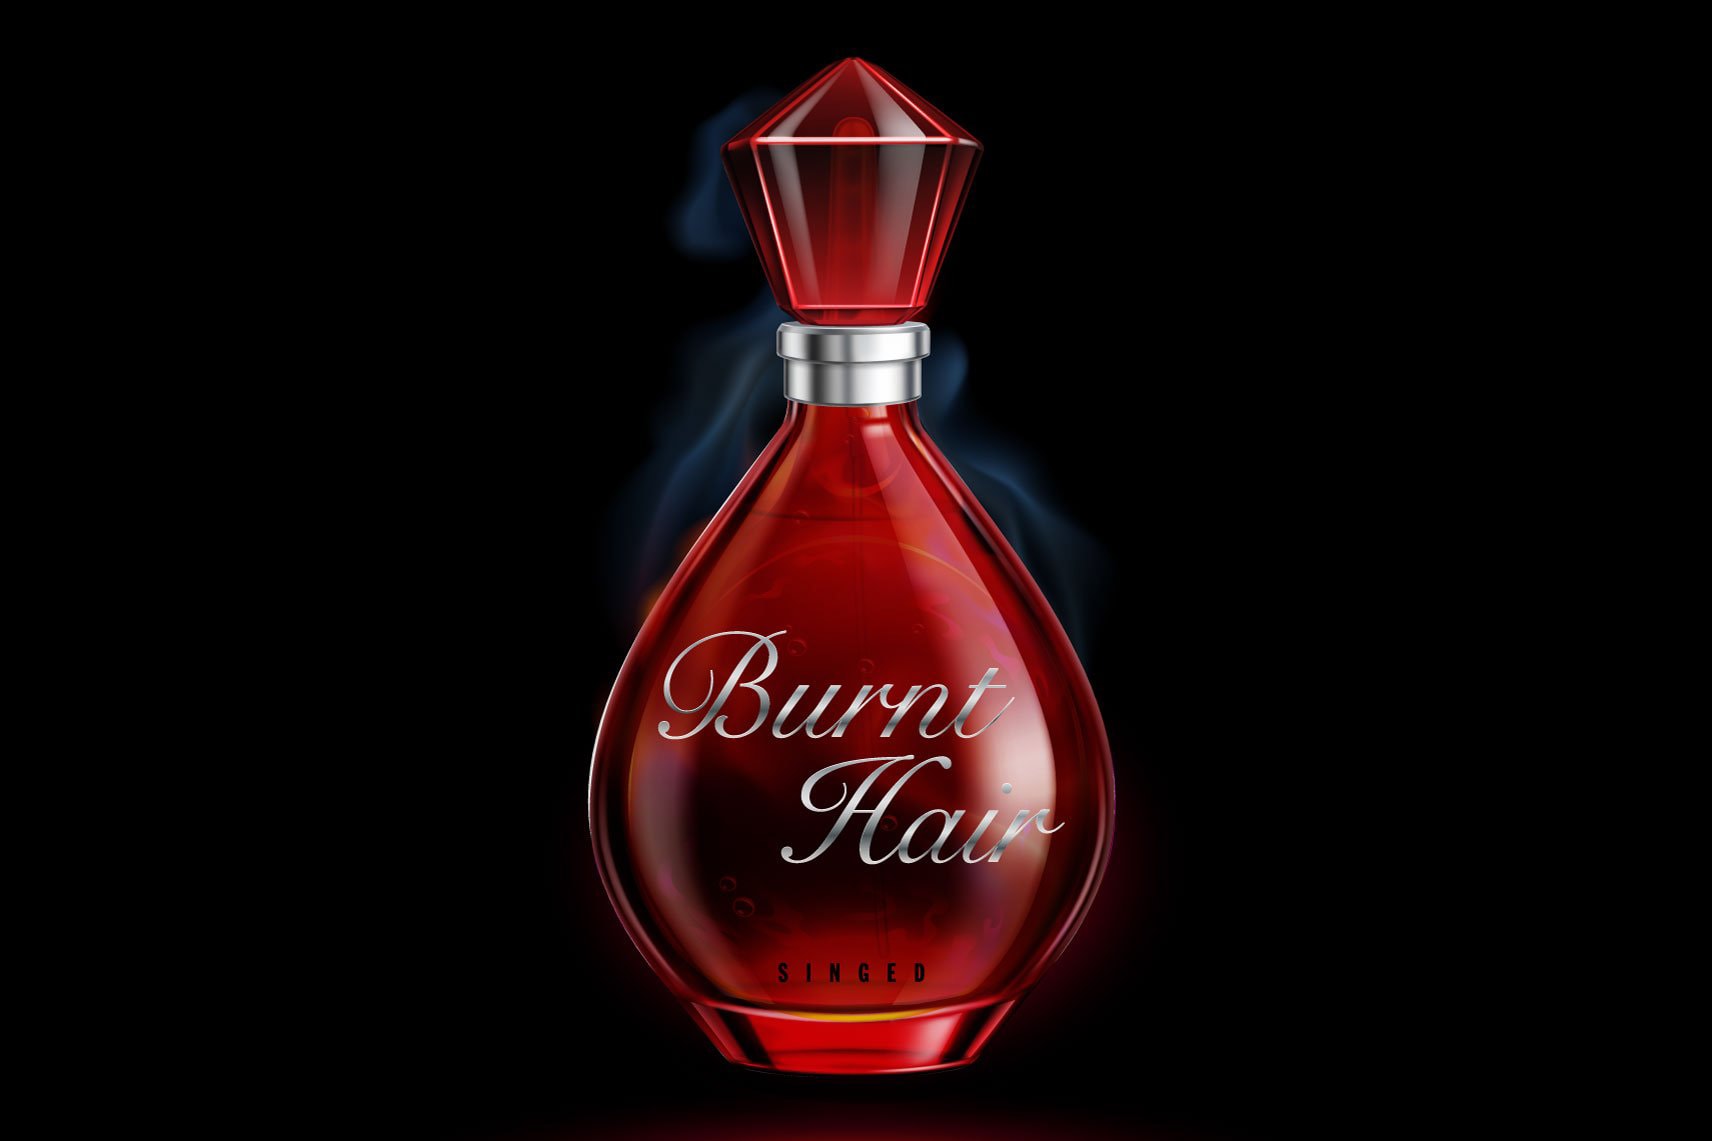 Elon Musk 正式推出首款香水「燒焦頭髮 Burnt Hair」